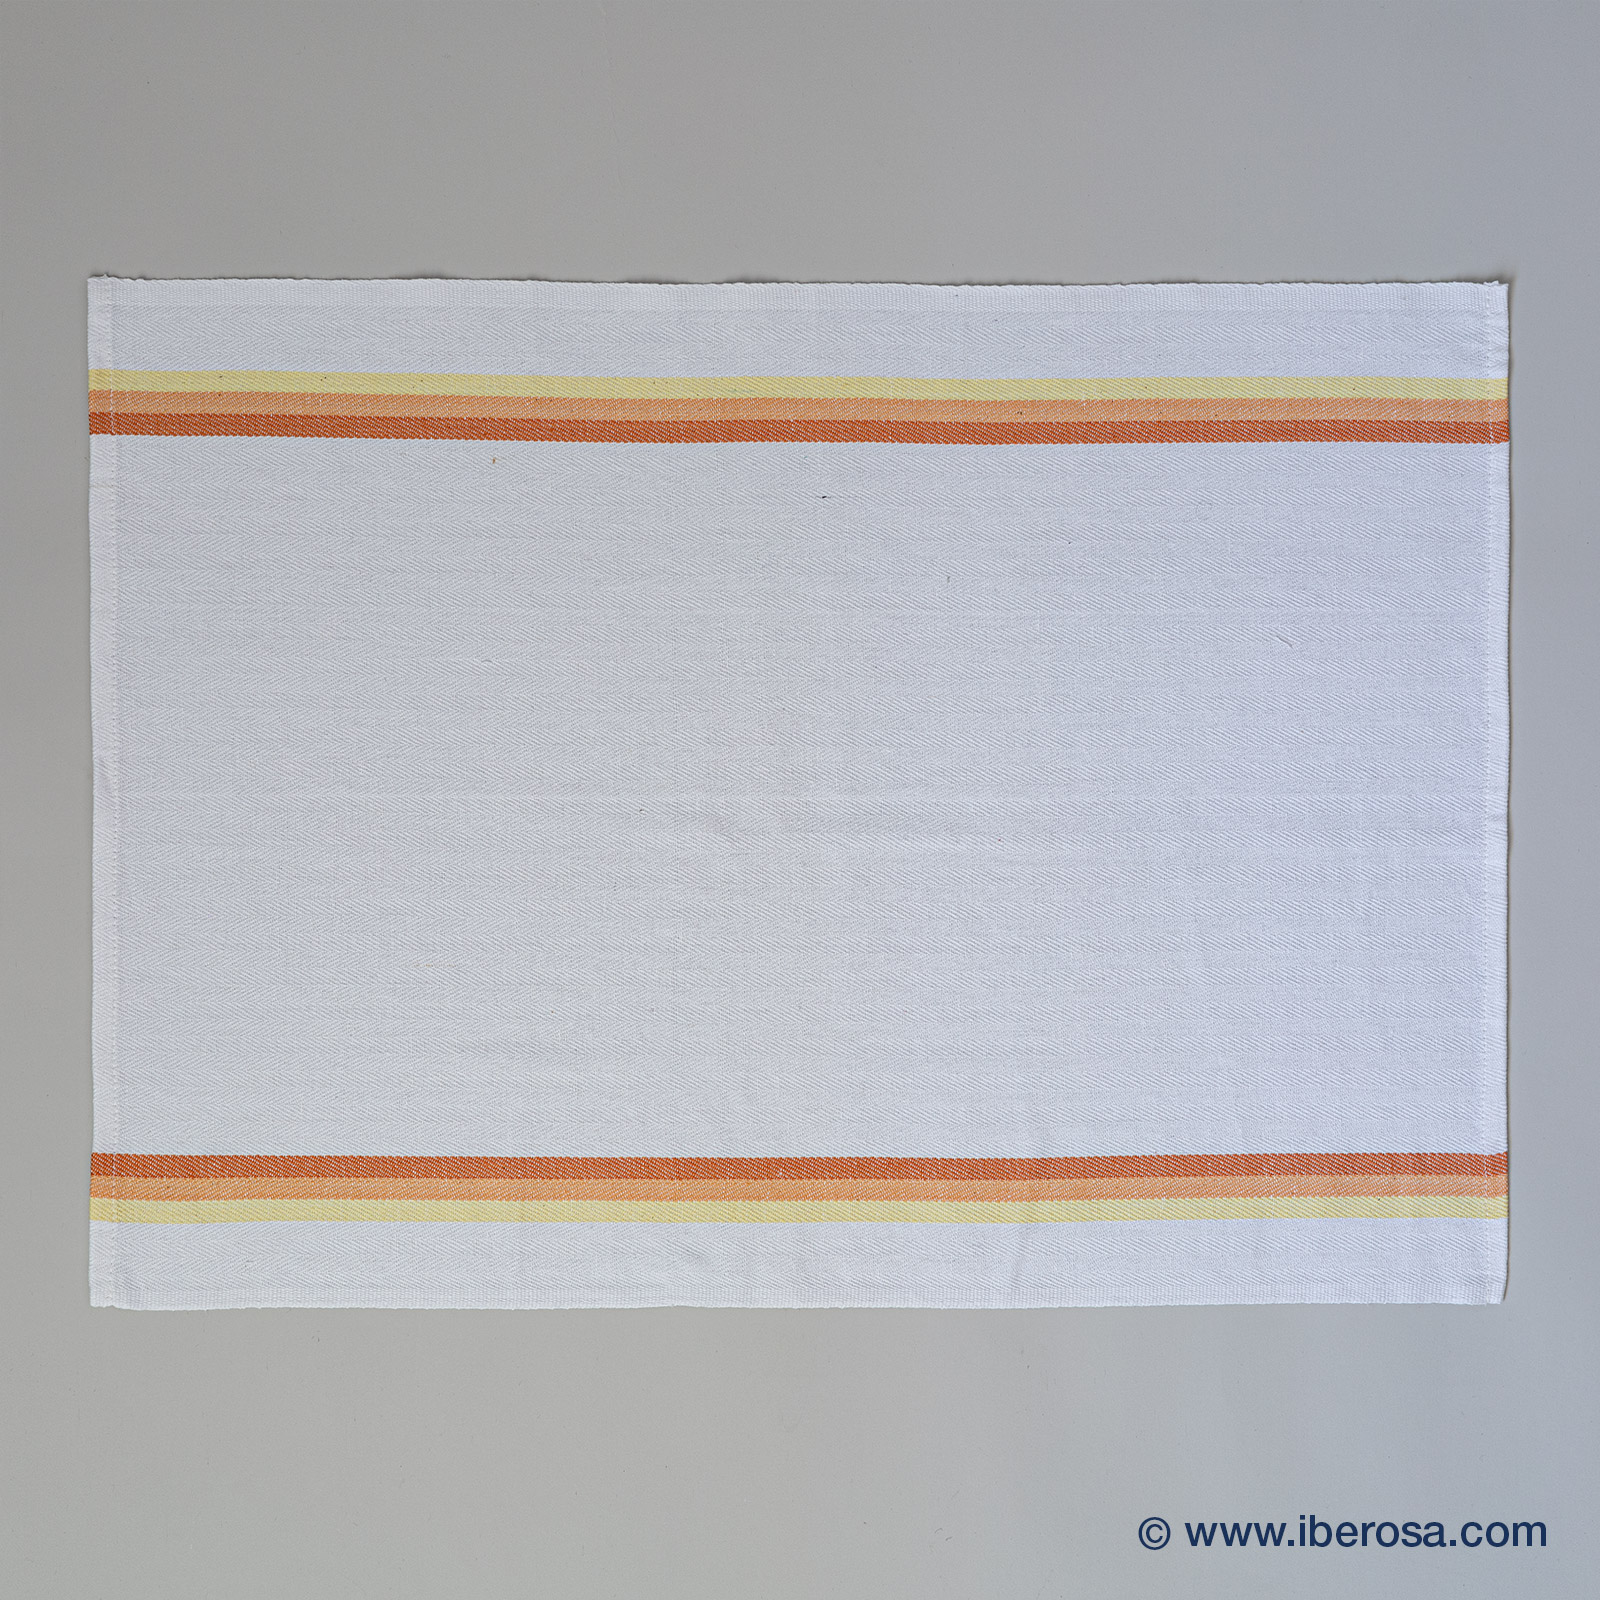 iberosa-textiles-rumbo-toallas-pano-cocina-rayas-naranjas-02